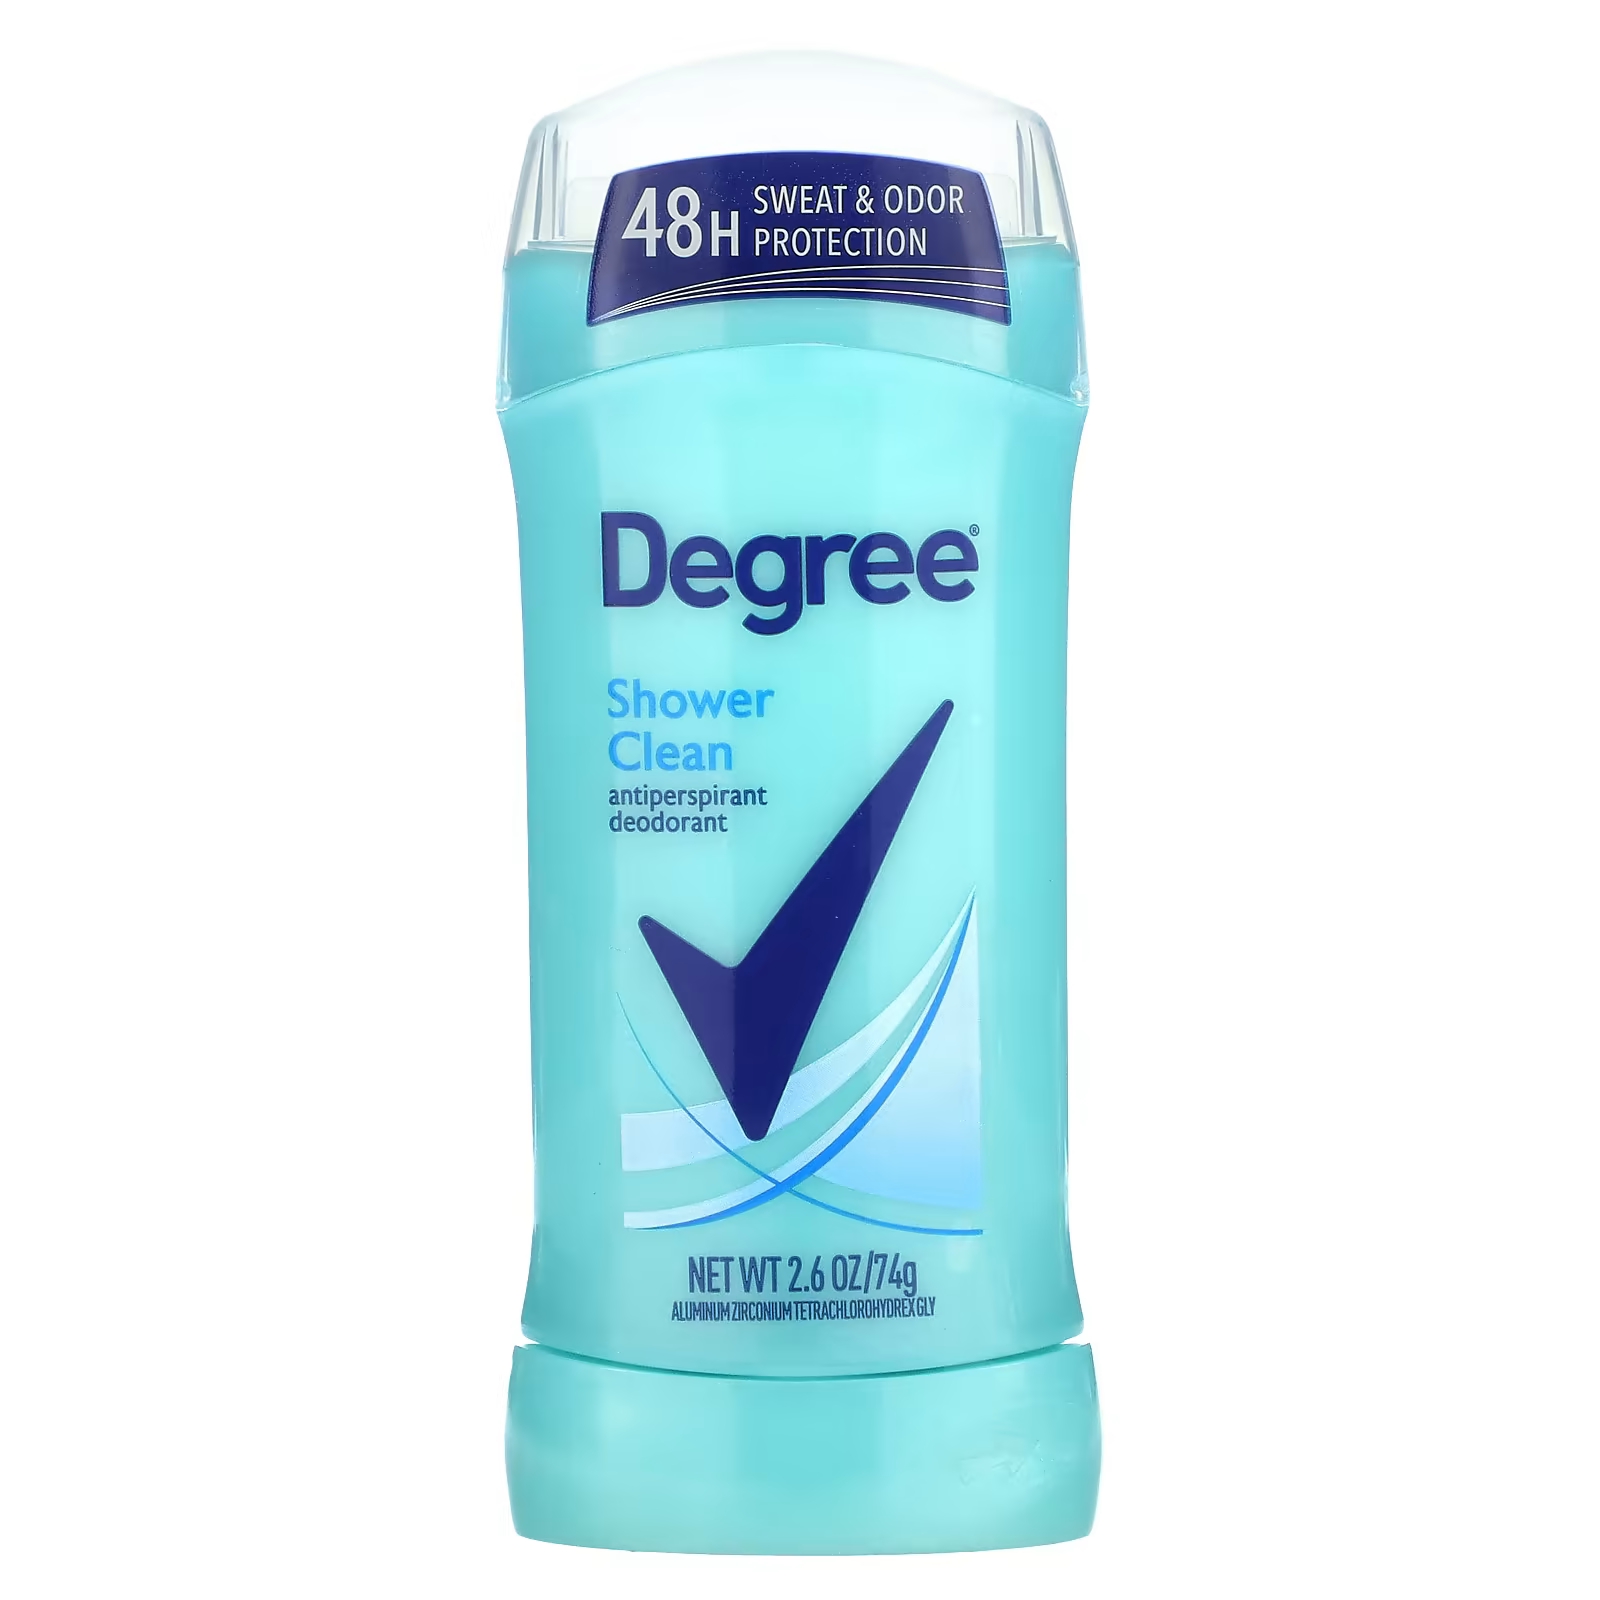 Дезодорант-антиперспирант Degree Deodorant Clean для душа degree дезодорант антиперспирант на 48 часов прохладный комфорт 76 г 2 7 унции